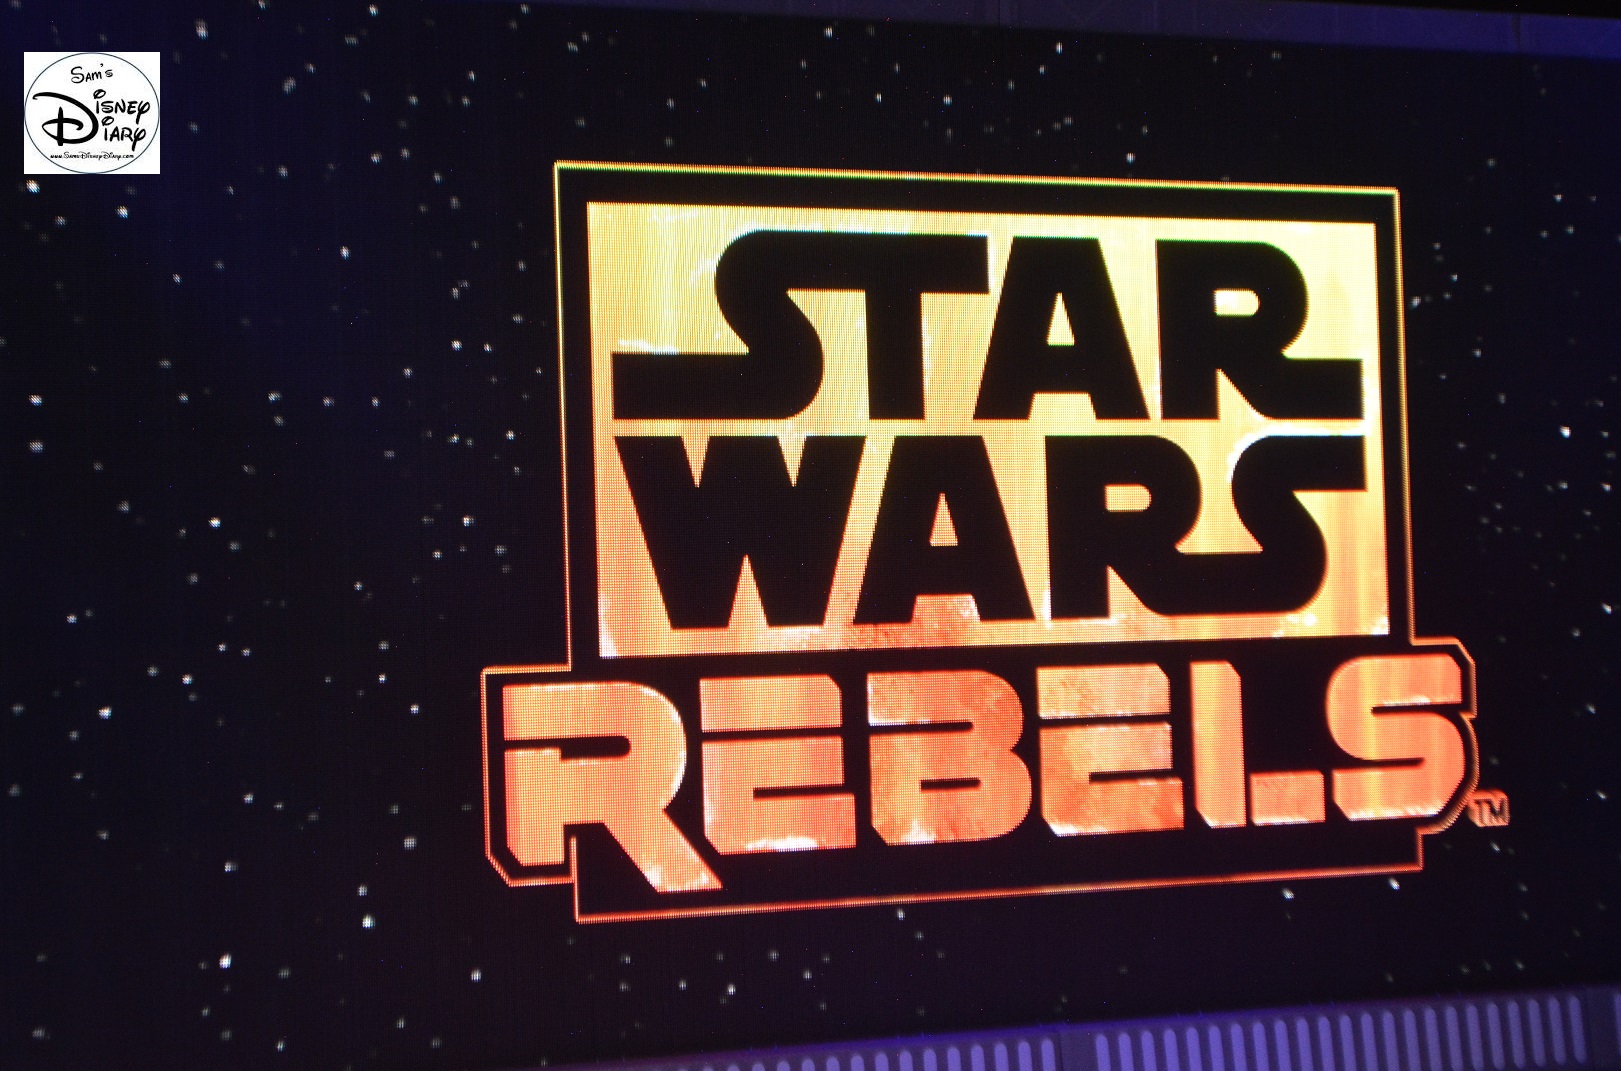 Star Wars Weekend 2015 Weekend 1 - Star Wars Rebels - #SWW2015